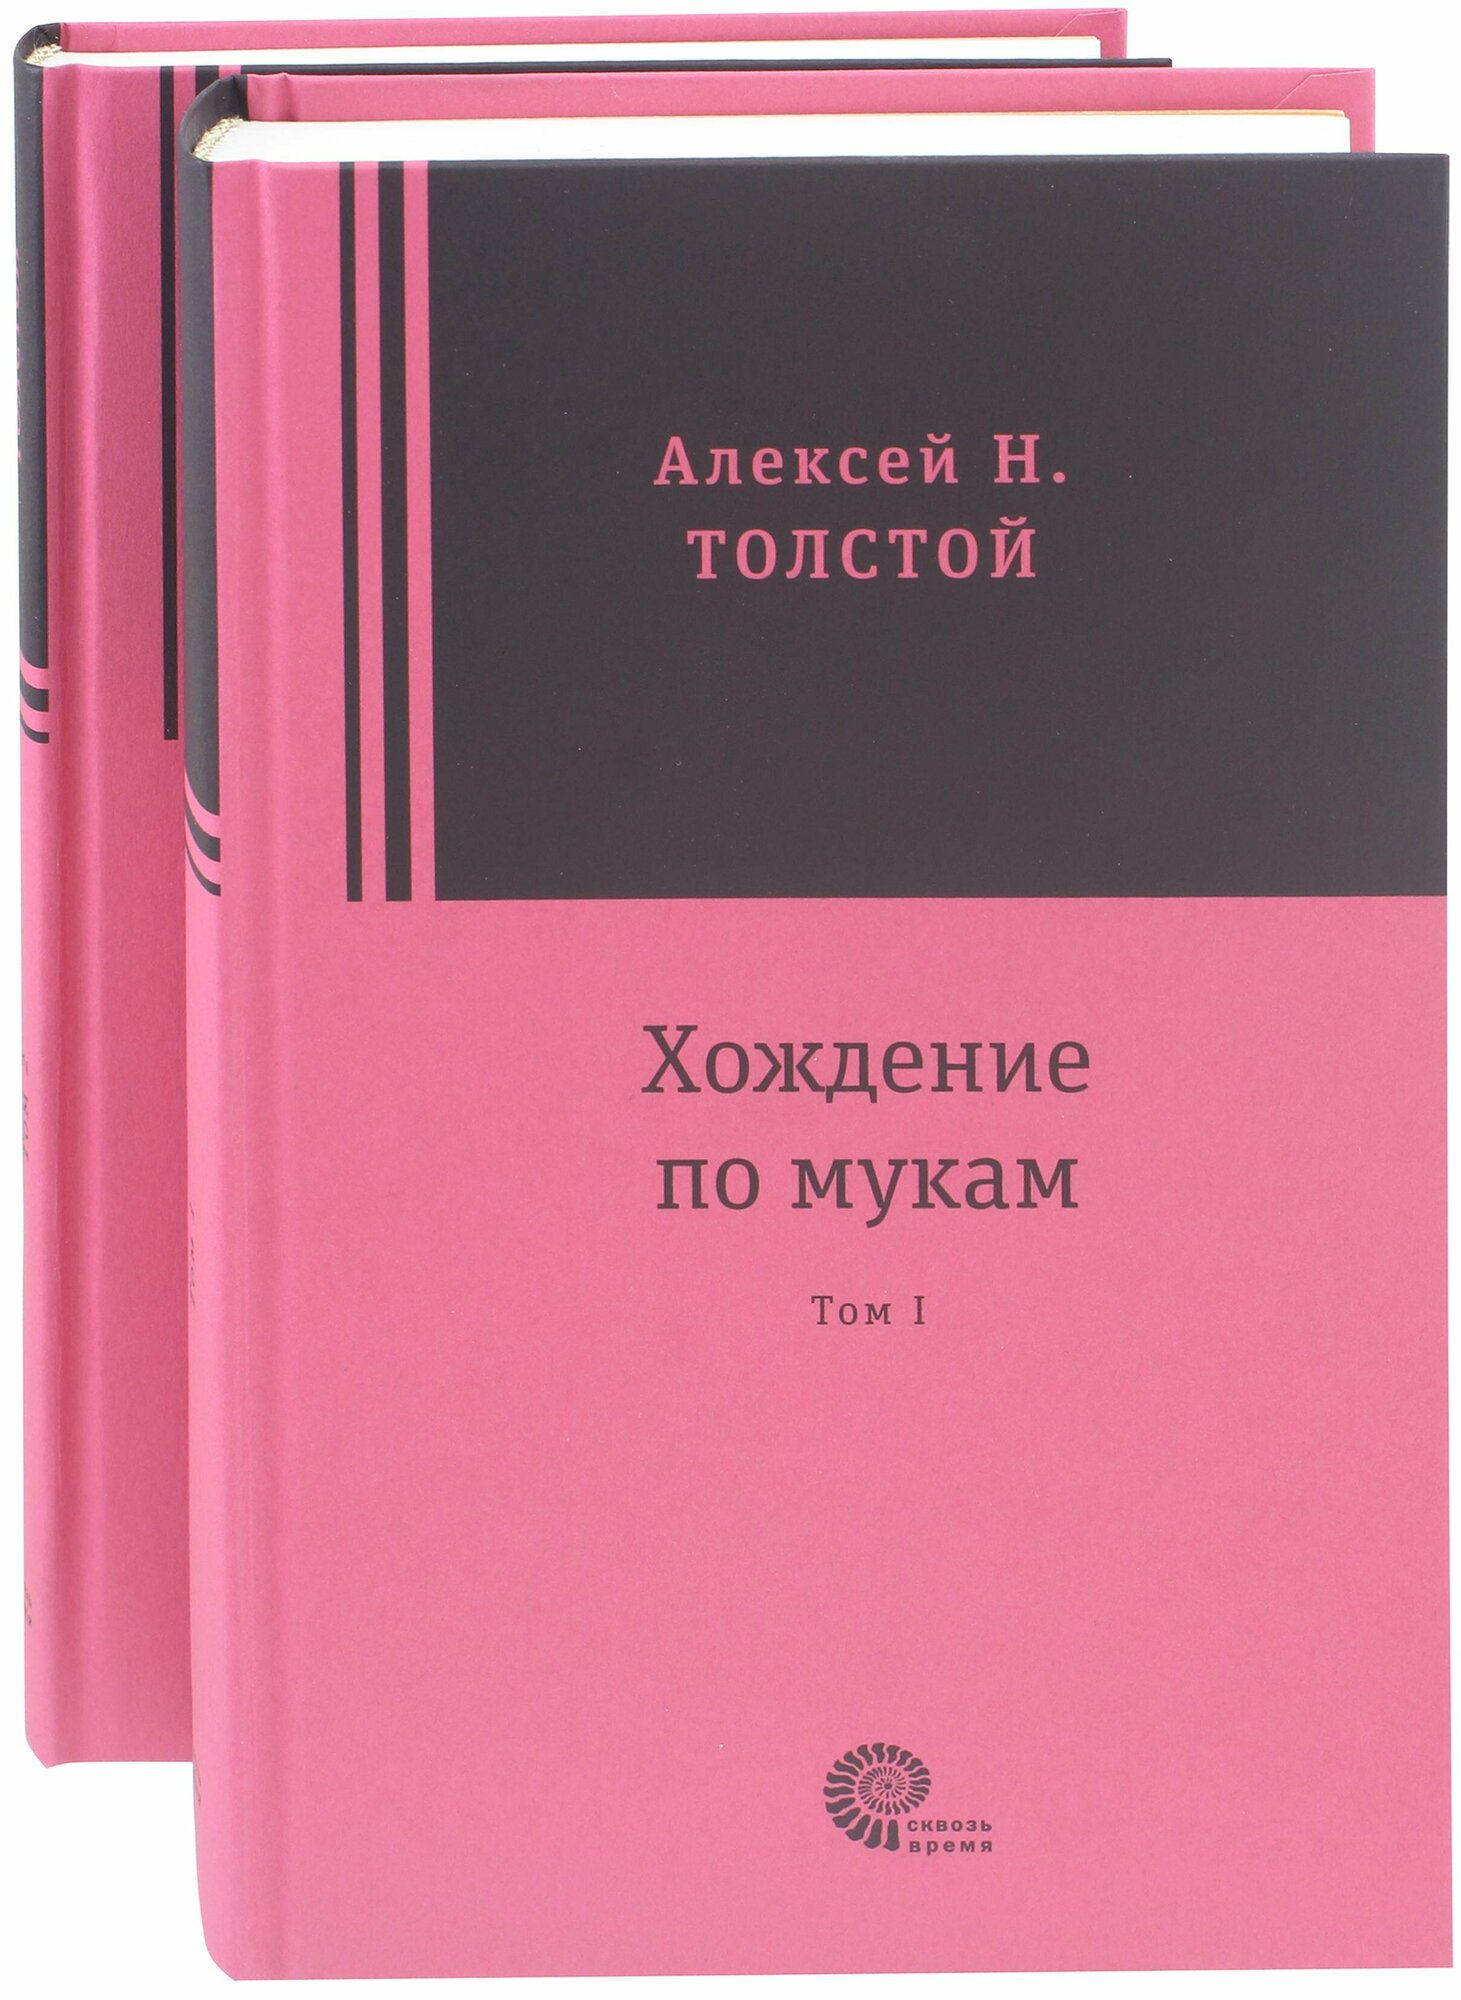 Хождение по мукам. В 2-х томах | Толстой Алексей Николаевич